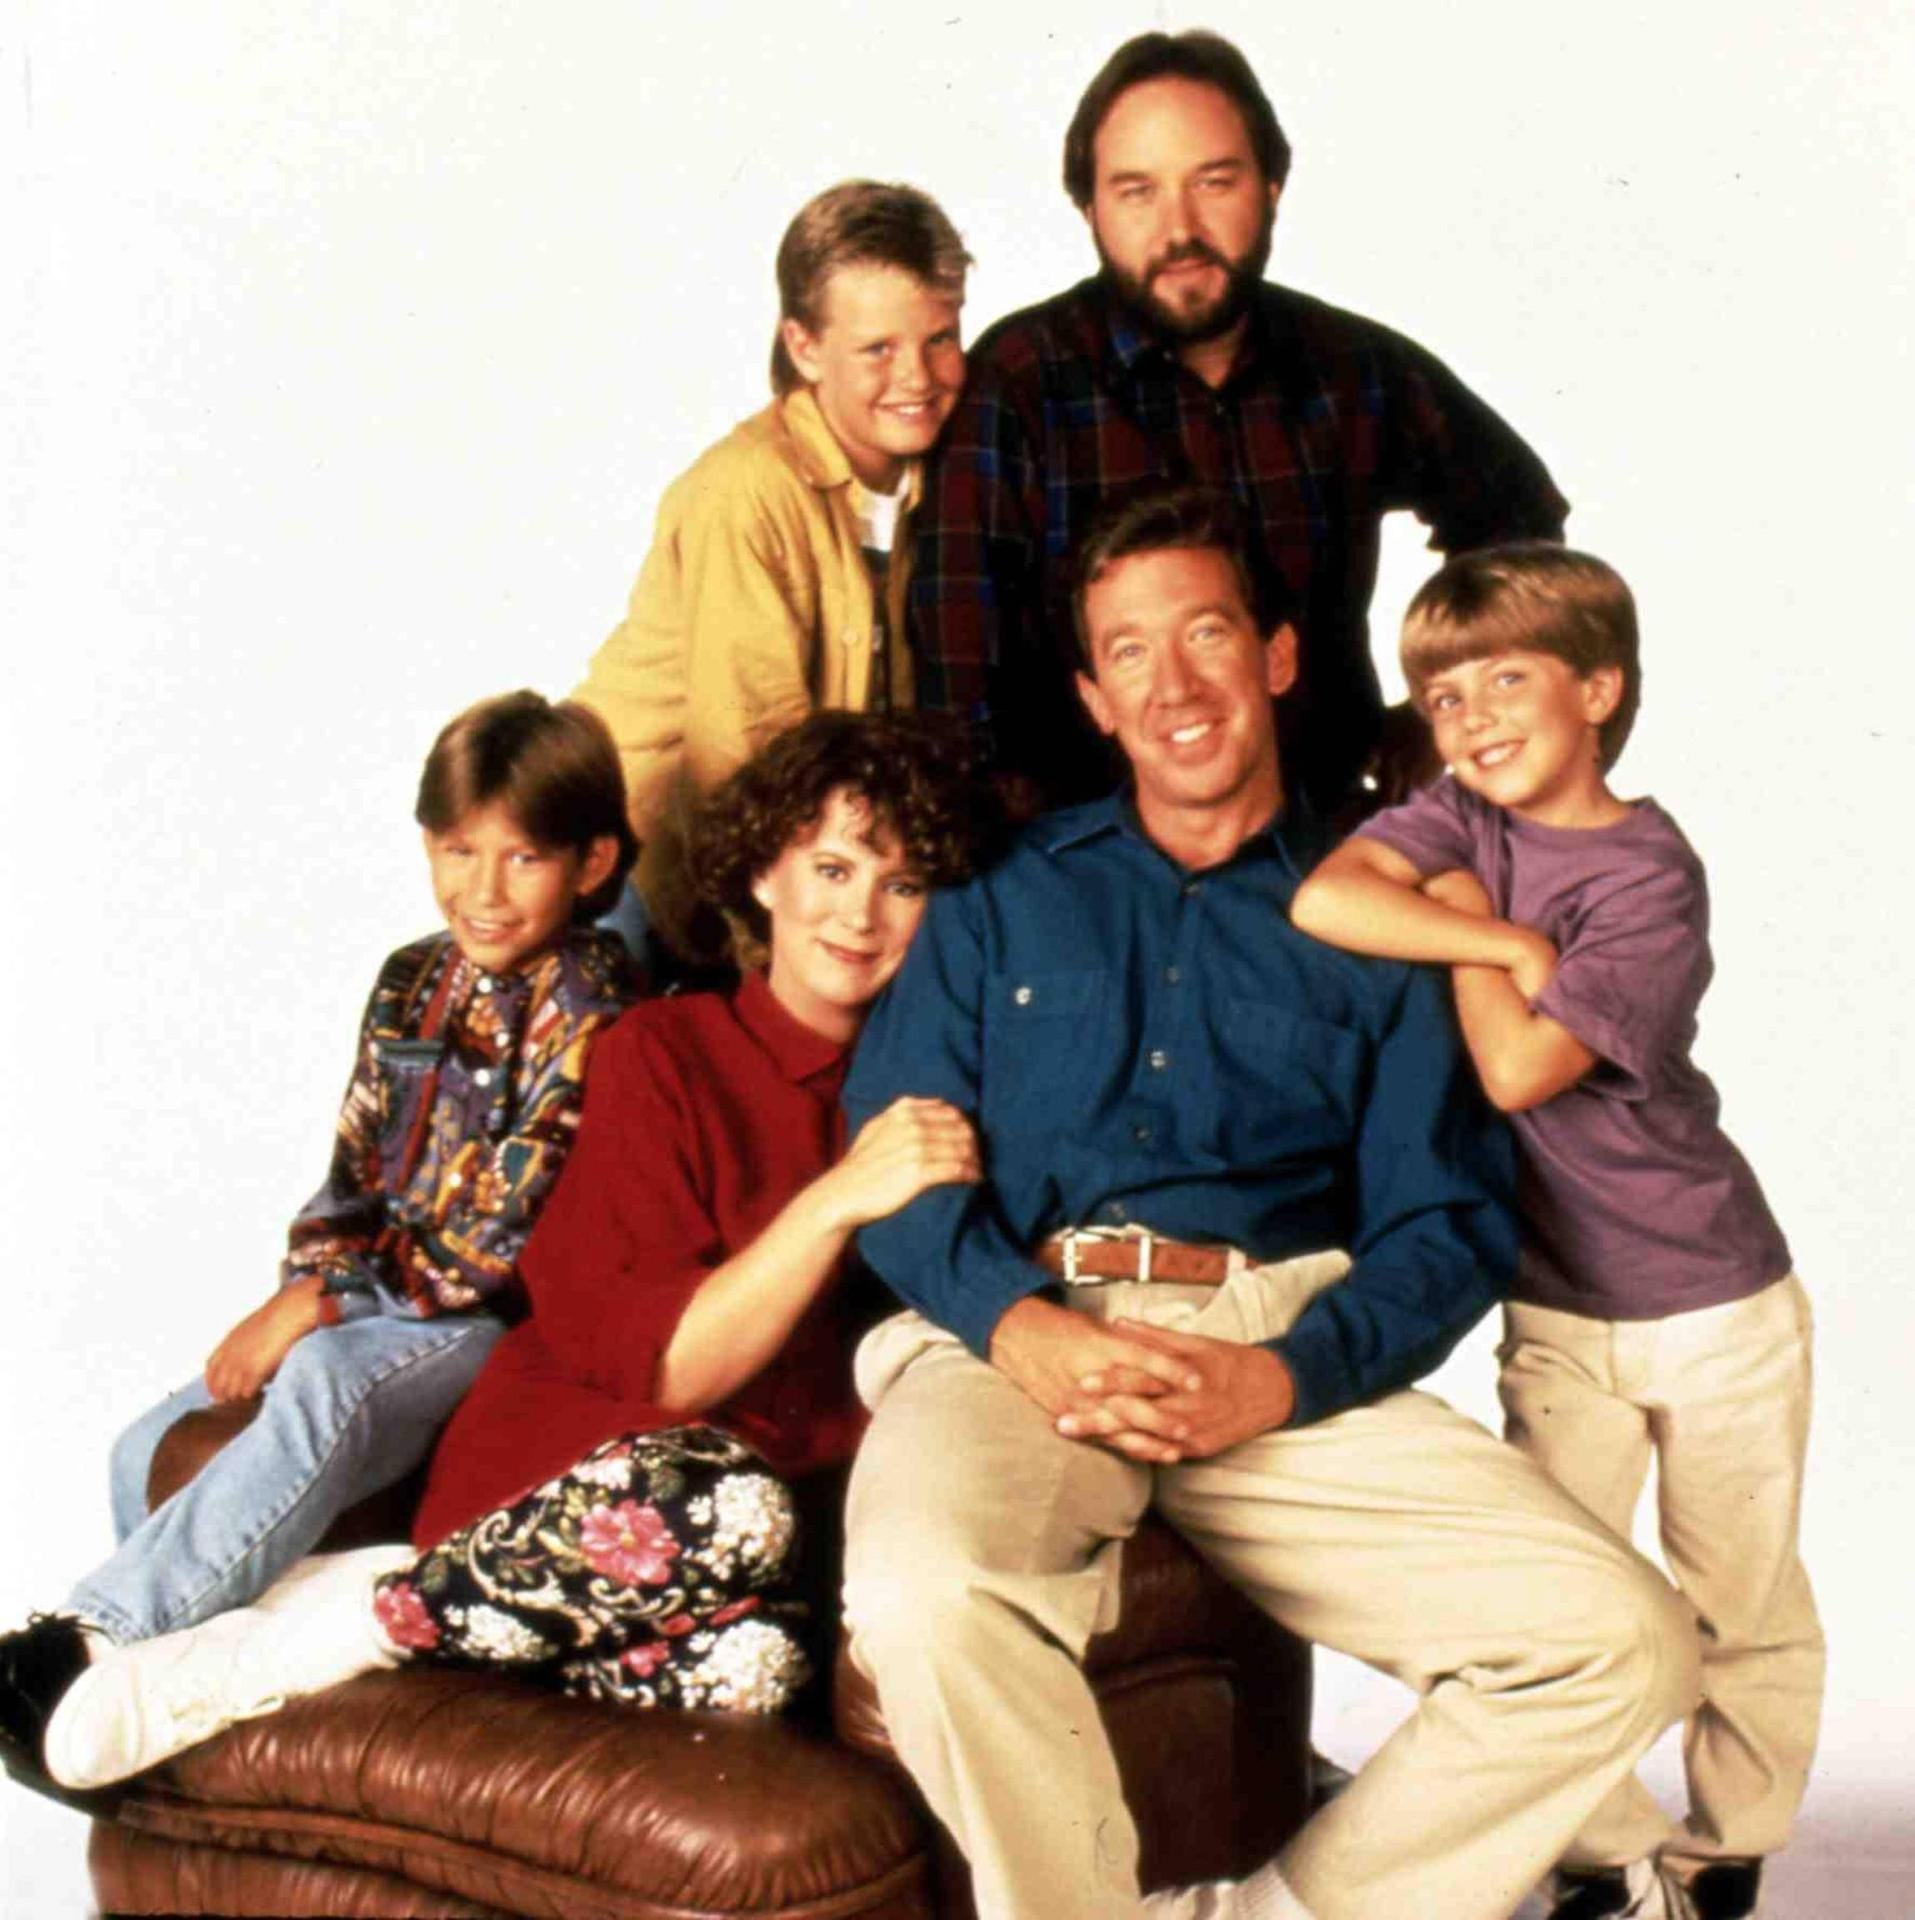 204 Folgen lang verfolgten die TV-Zuschauer zwischen 1991 und 1999 die Geschichten um TV-Moderator und "Heimwerkerkönig" Tim Taylor und seine Familie.